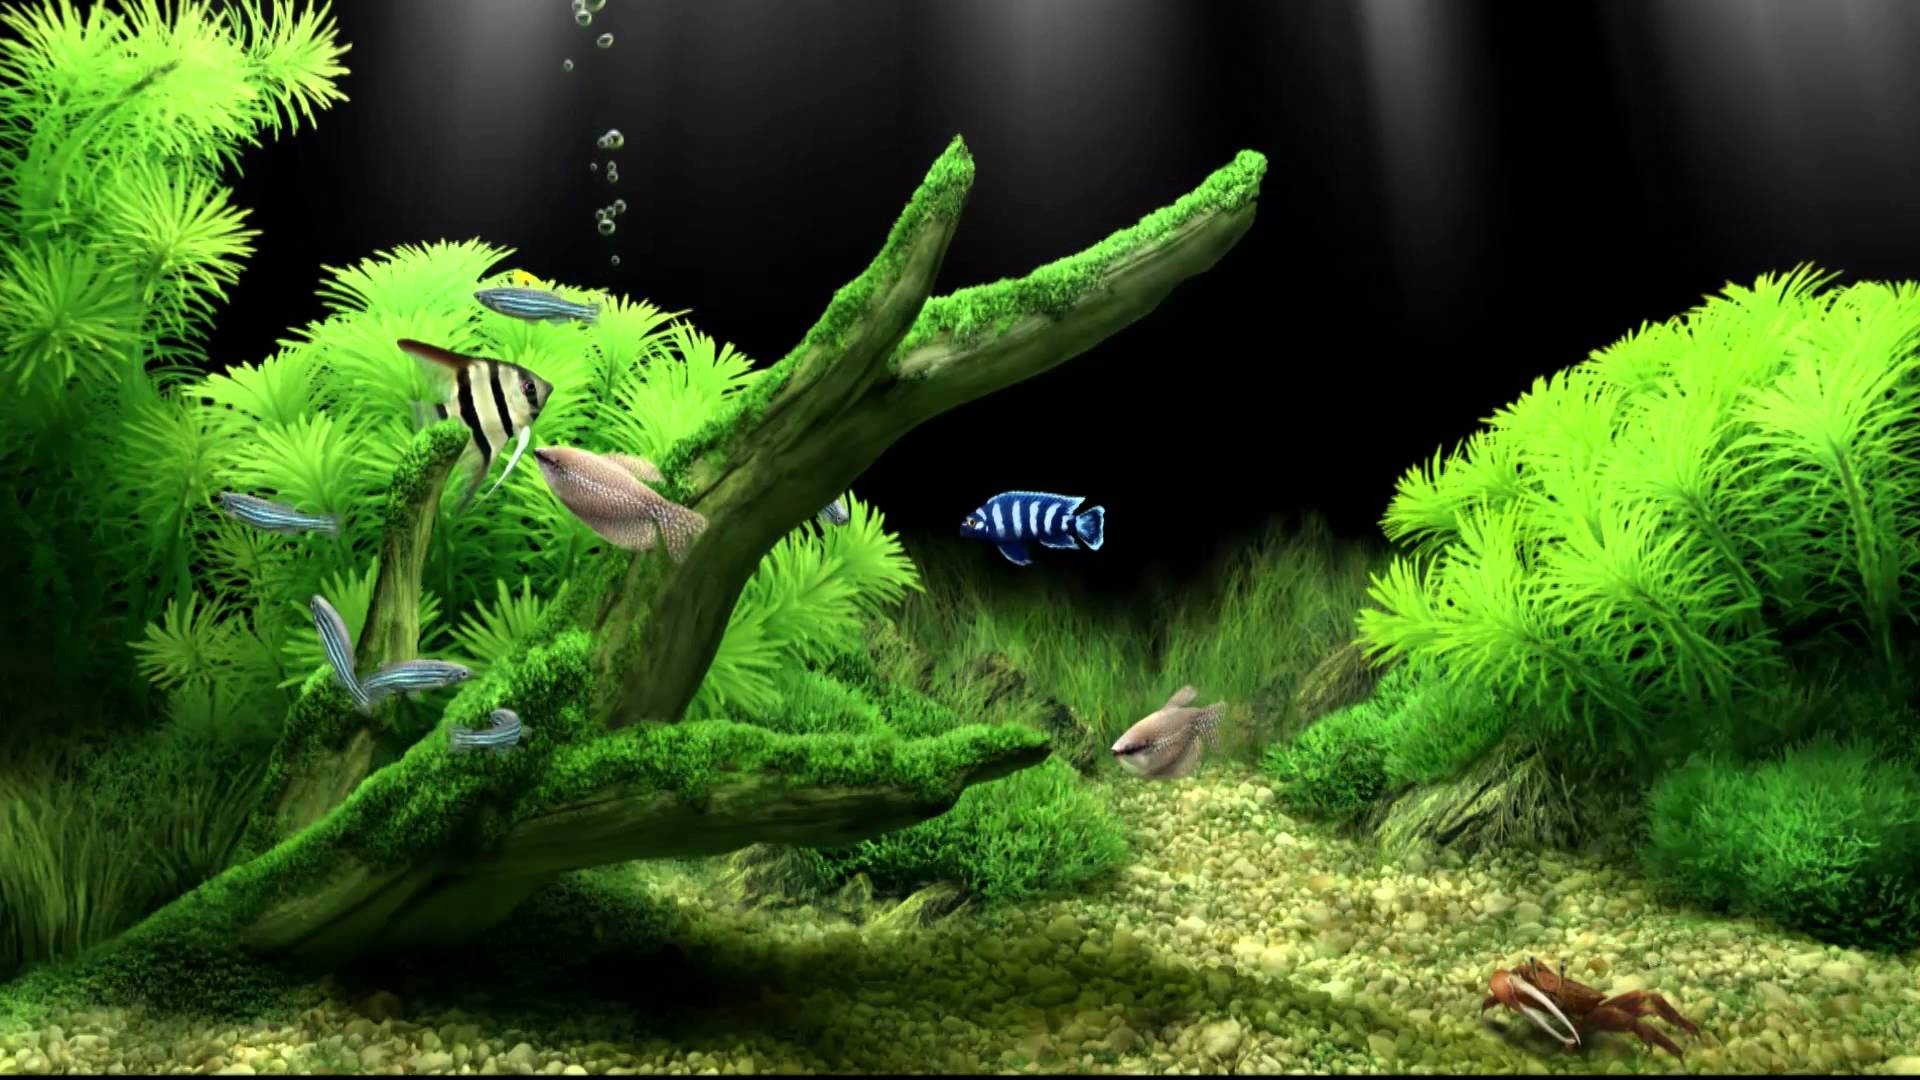 Aquarium HD 1080p Wallpaper - WallpaperSafari